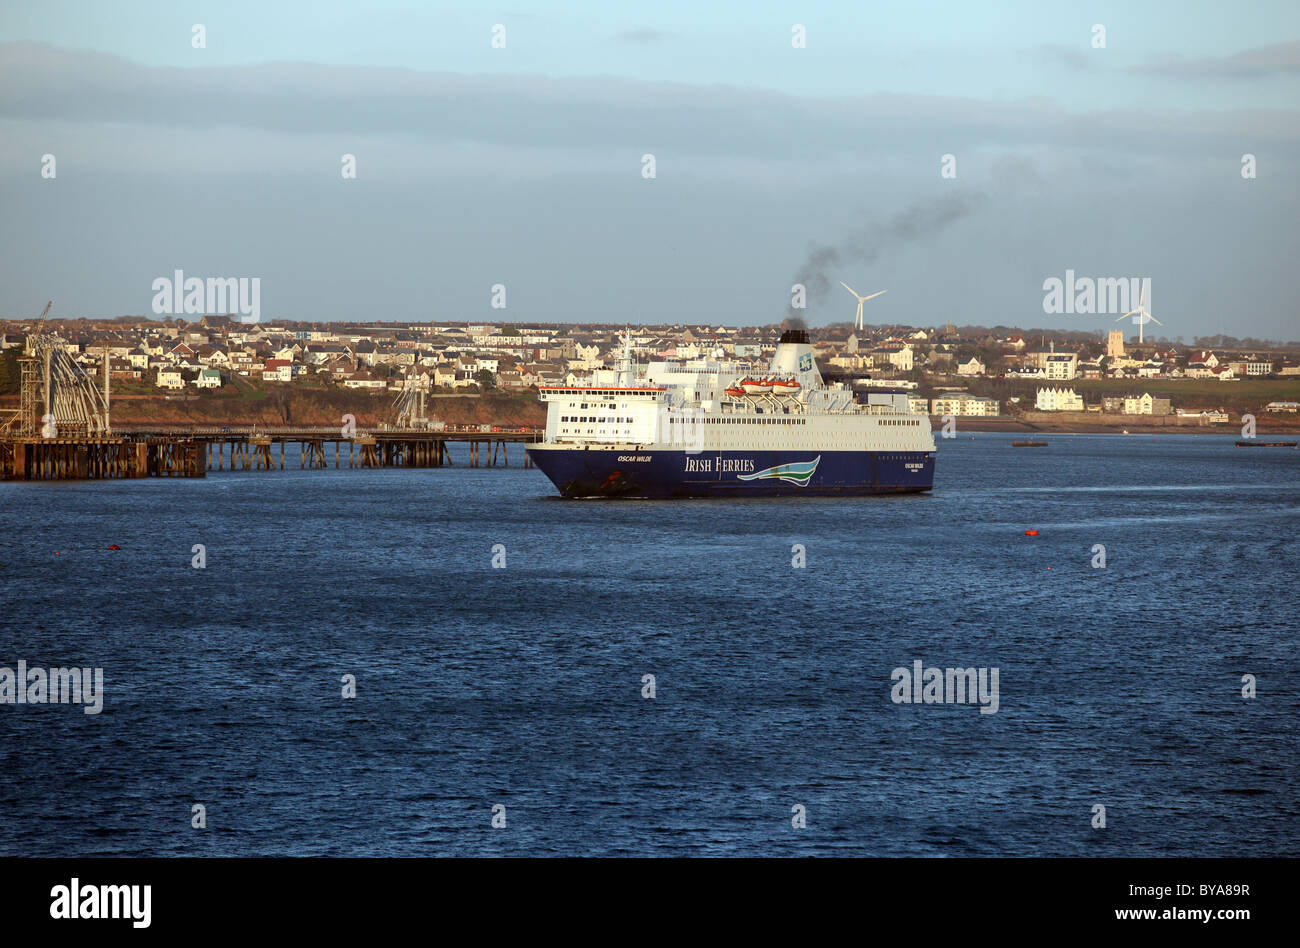 Irish Ferries nave passeggeri Oscar Wilde uscire da Pembroke Dock, come si vede da Angolo, Pembrokeshire Foto Stock